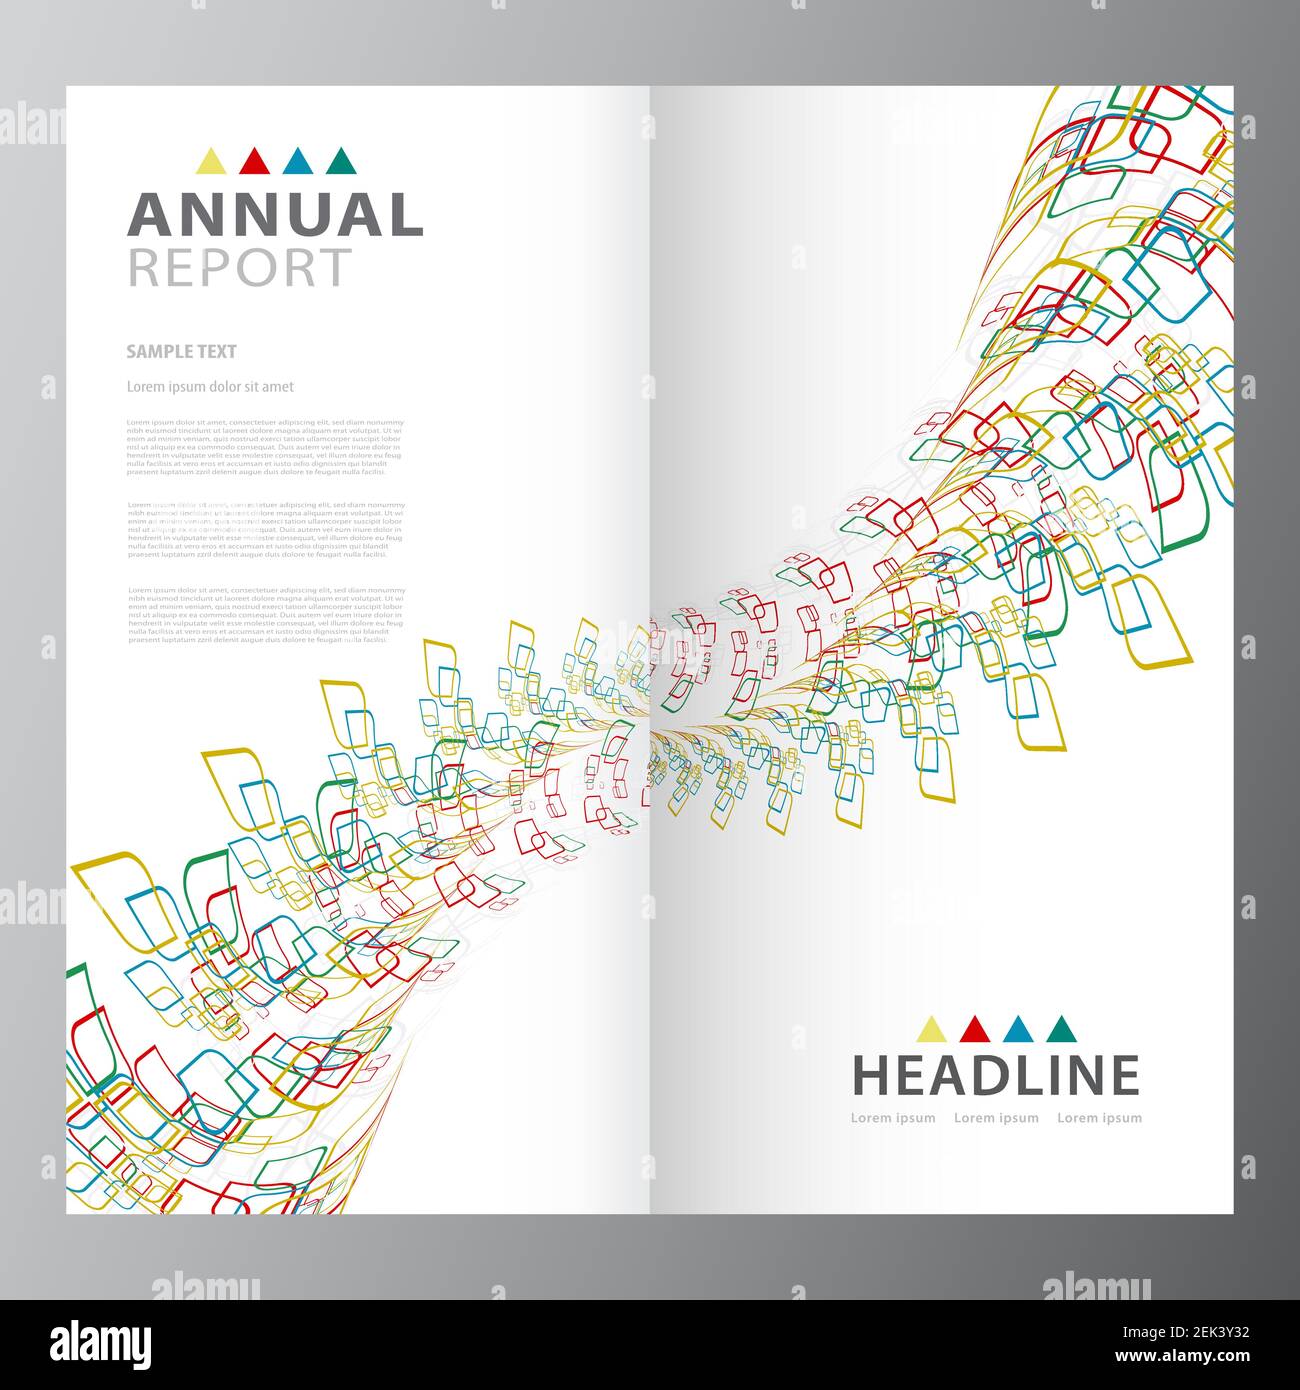 Geschäftsbericht Broschüre Layout Template Design Stock For Ind Annual Report Template